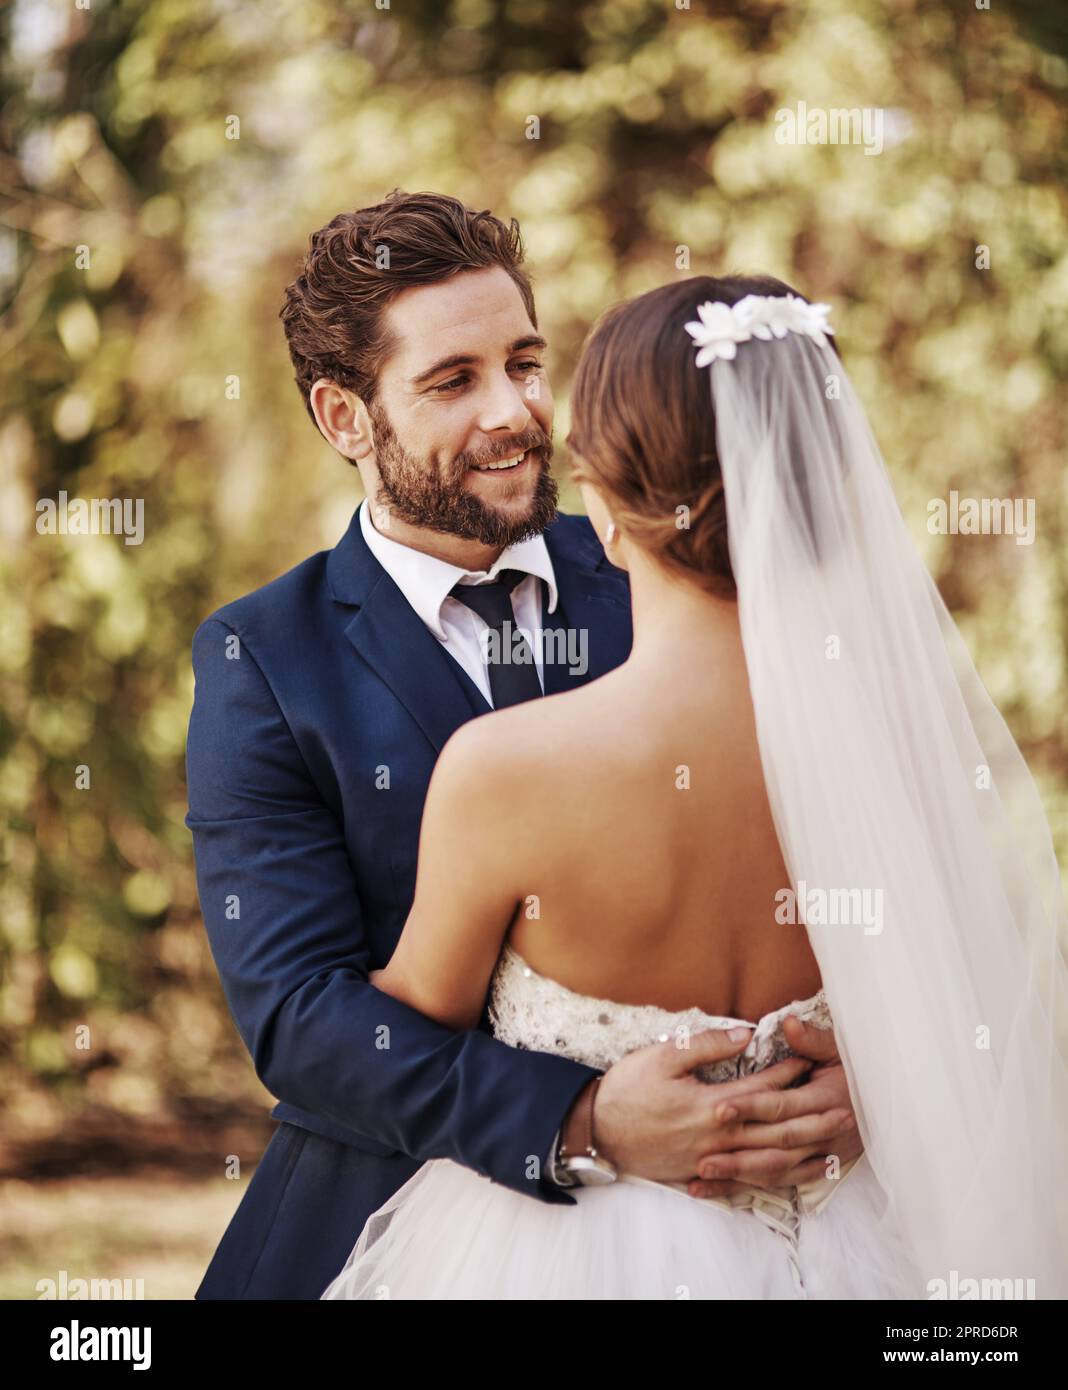 Du bist das schönste, was mir je passiert ist. Ein liebevoller junger Bräutigam, der seine Braut anlächelt, während er sie an ihrem Hochzeitstag umarmt. Stockfoto